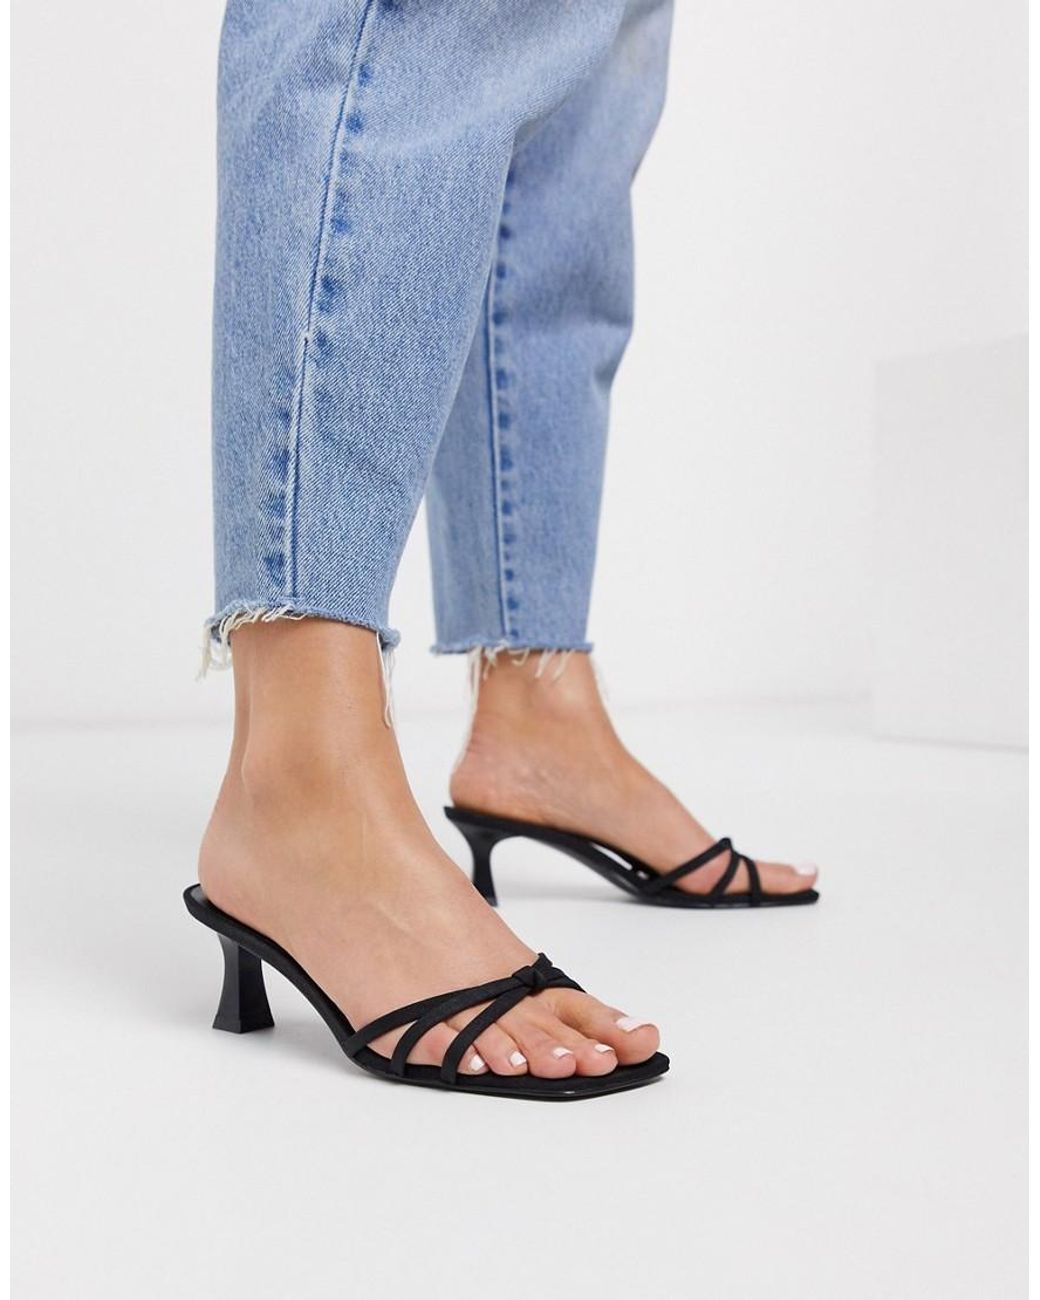 Mango Strappy Interest Heel Sandals in Black | Lyst